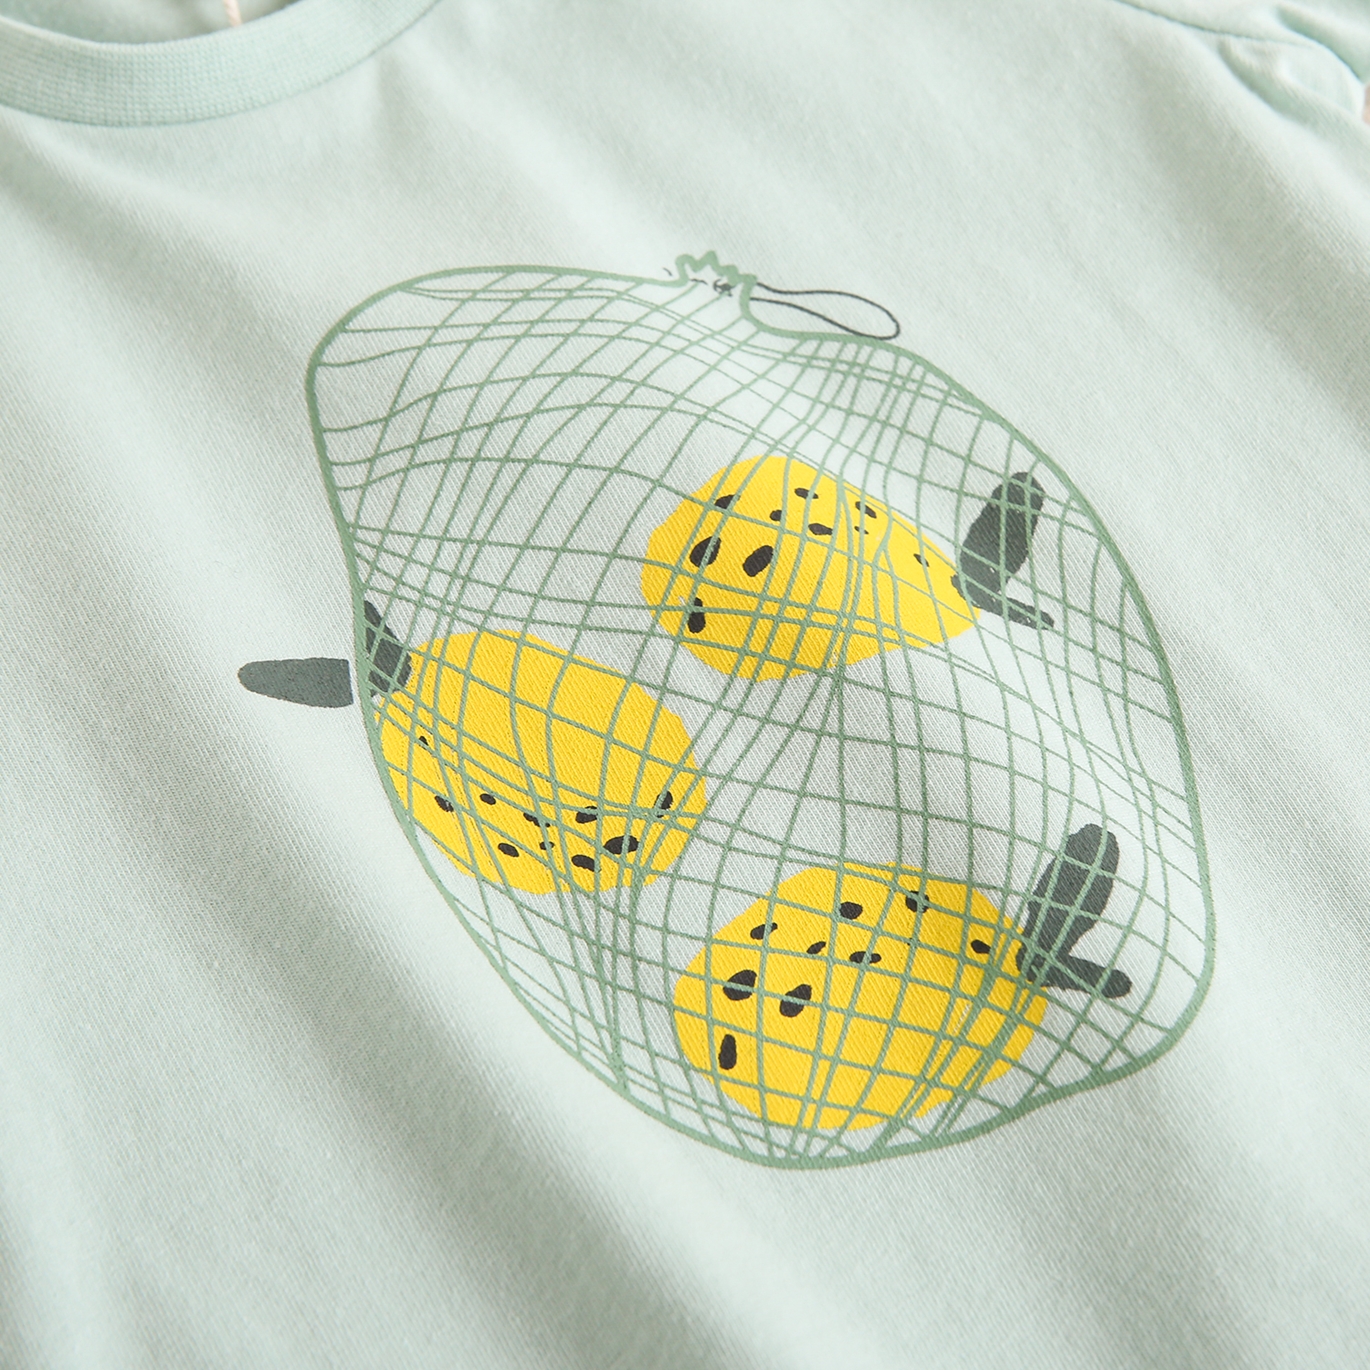 Imagen de Camiseta verde para bebé con dibujo de limones